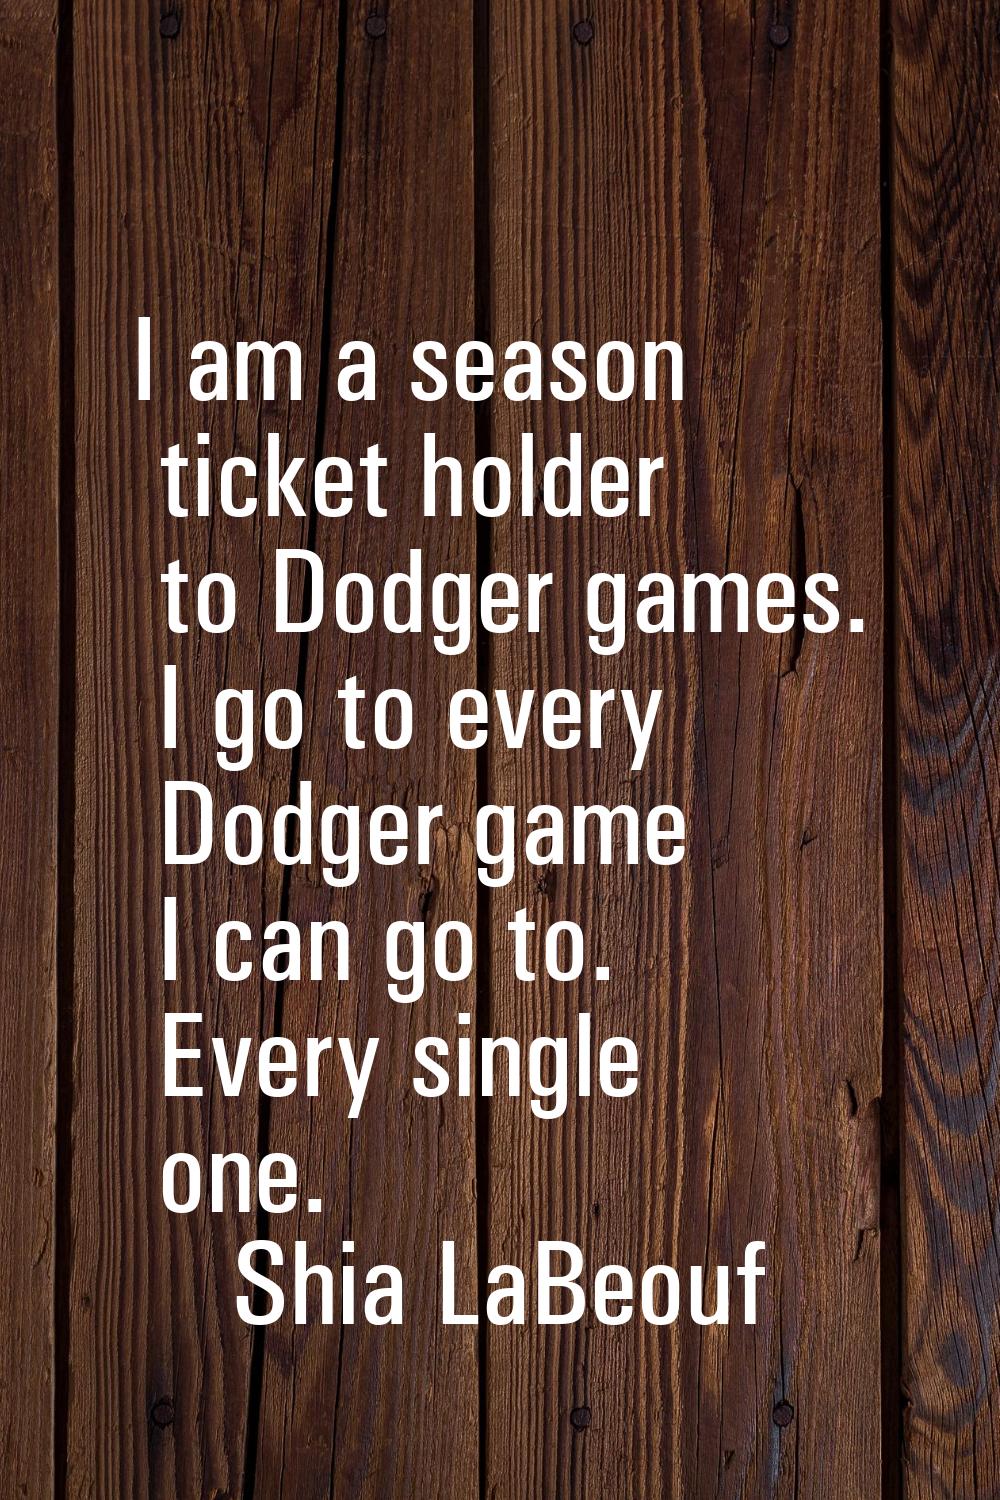 I am a season ticket holder to Dodger games. I go to every Dodger game I can go to. Every single on